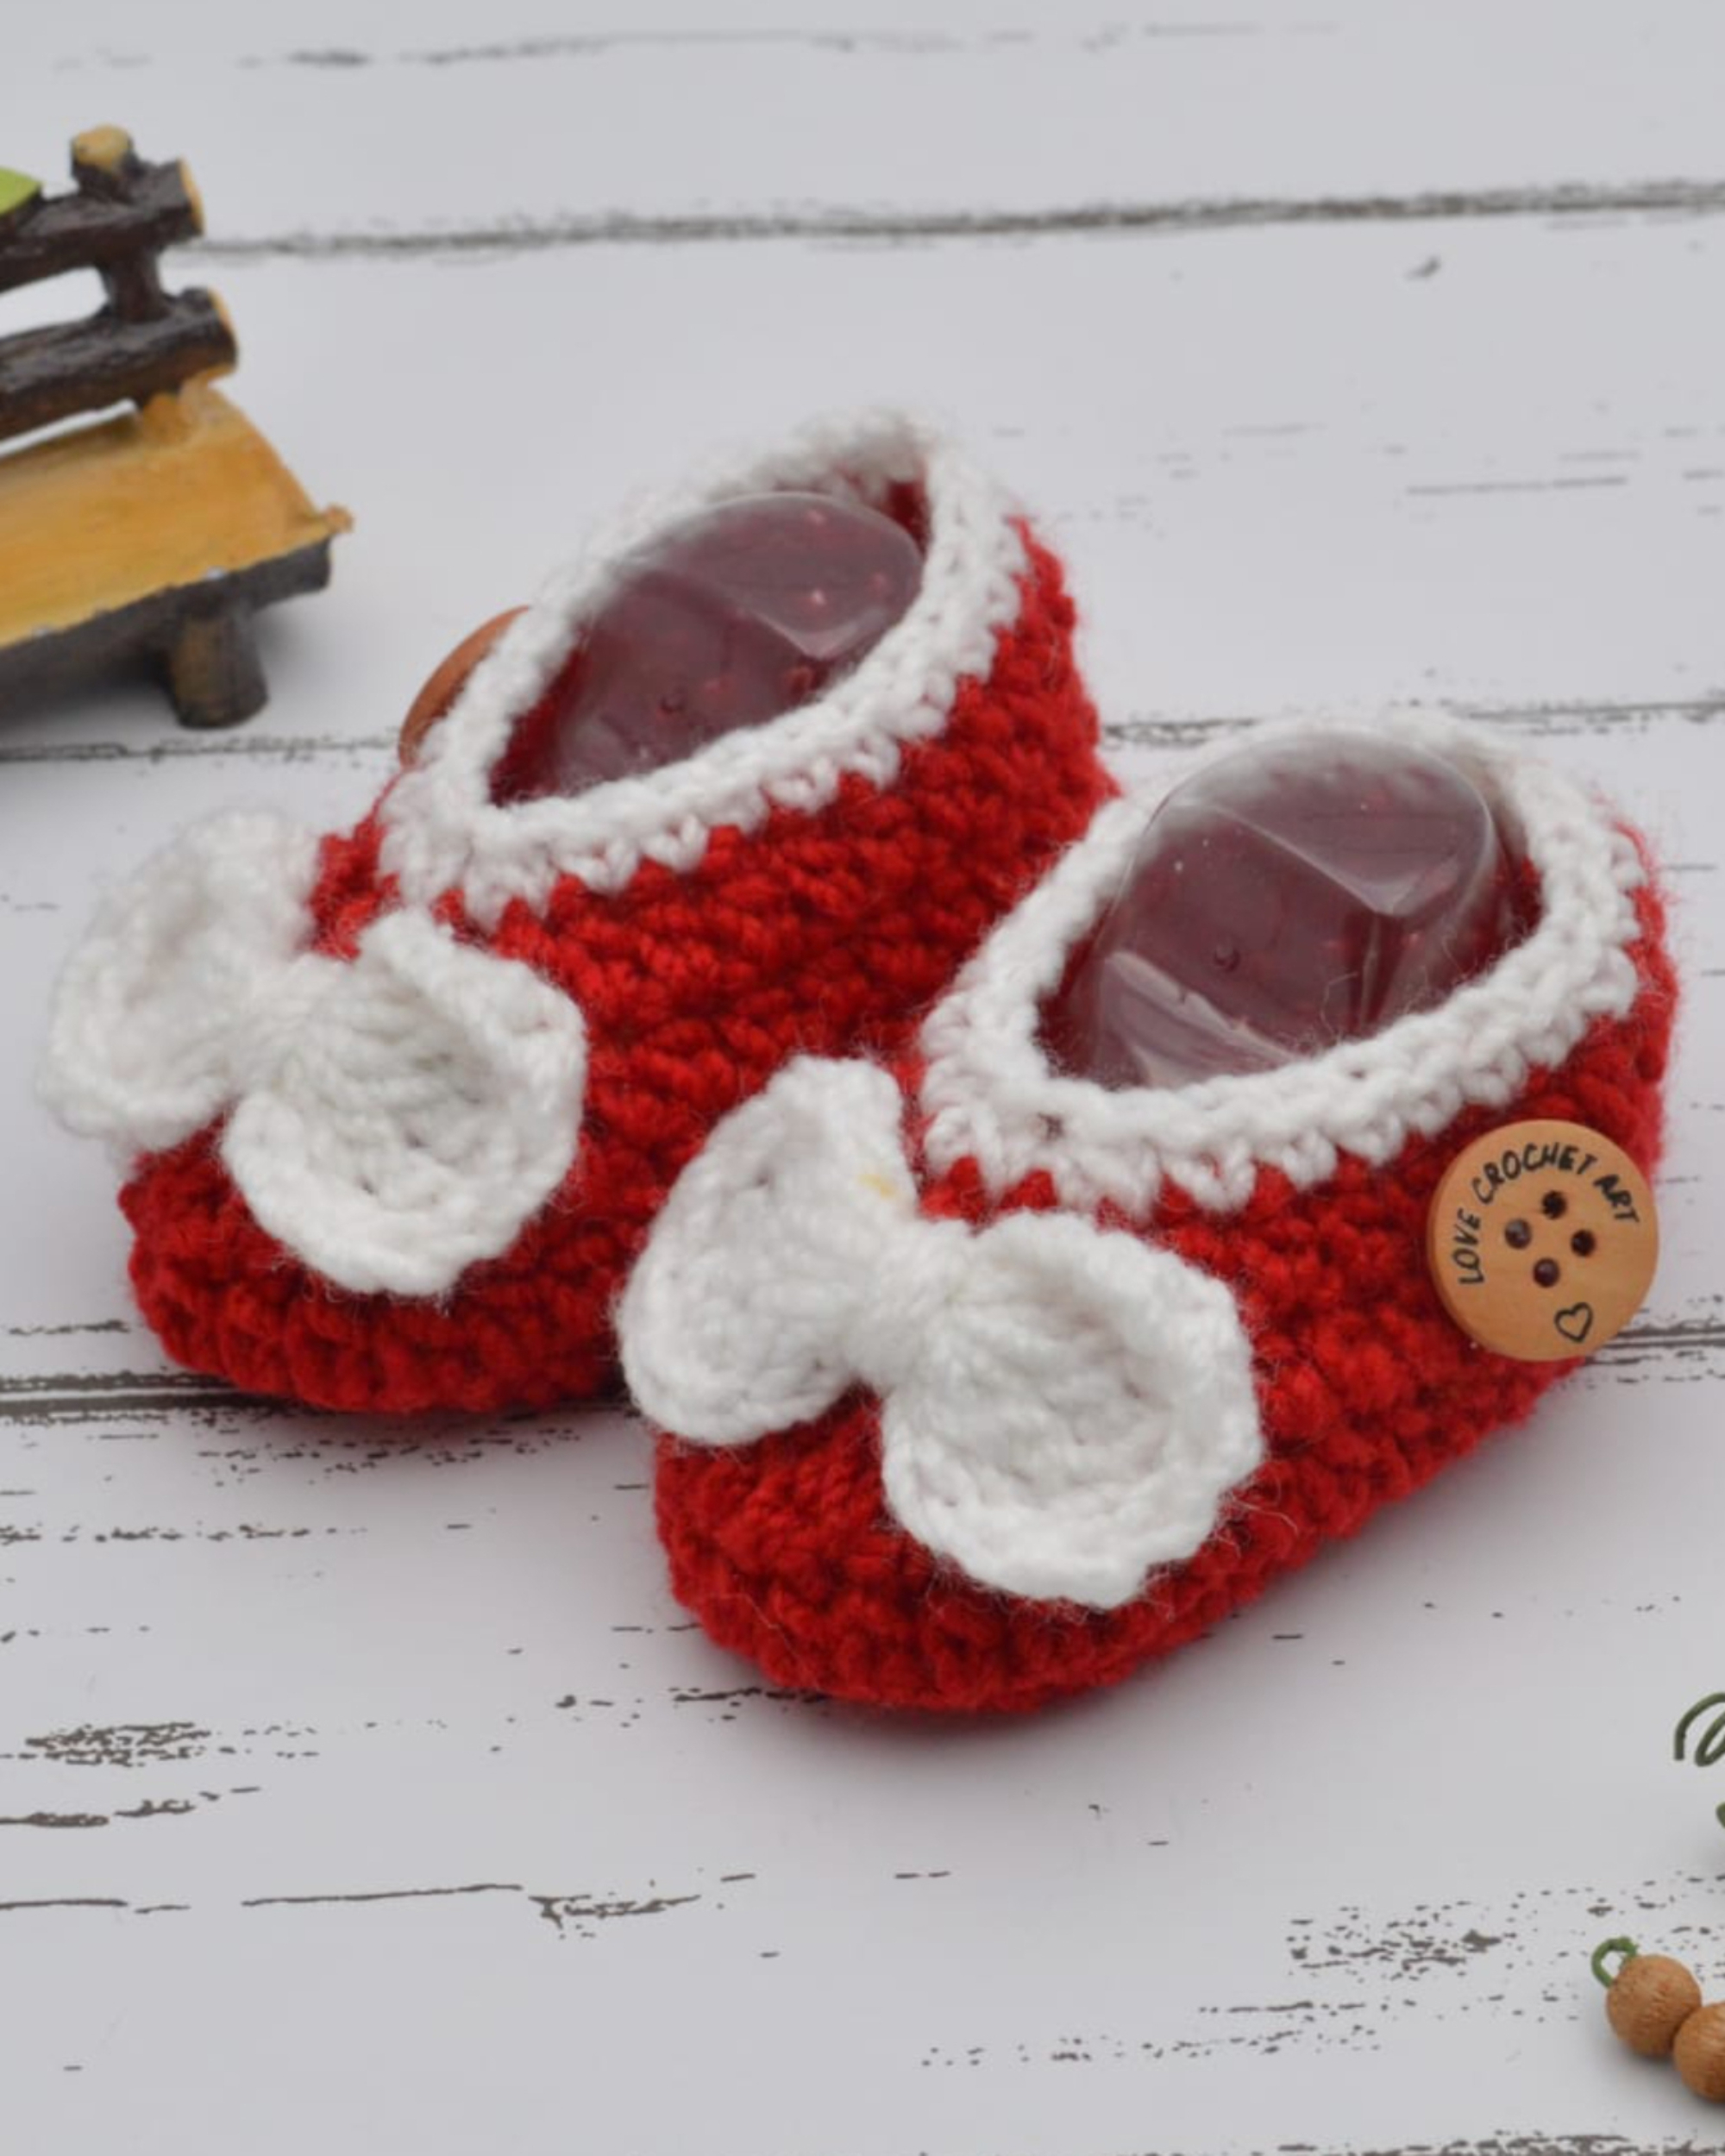 Red hand crocheted woollen booties